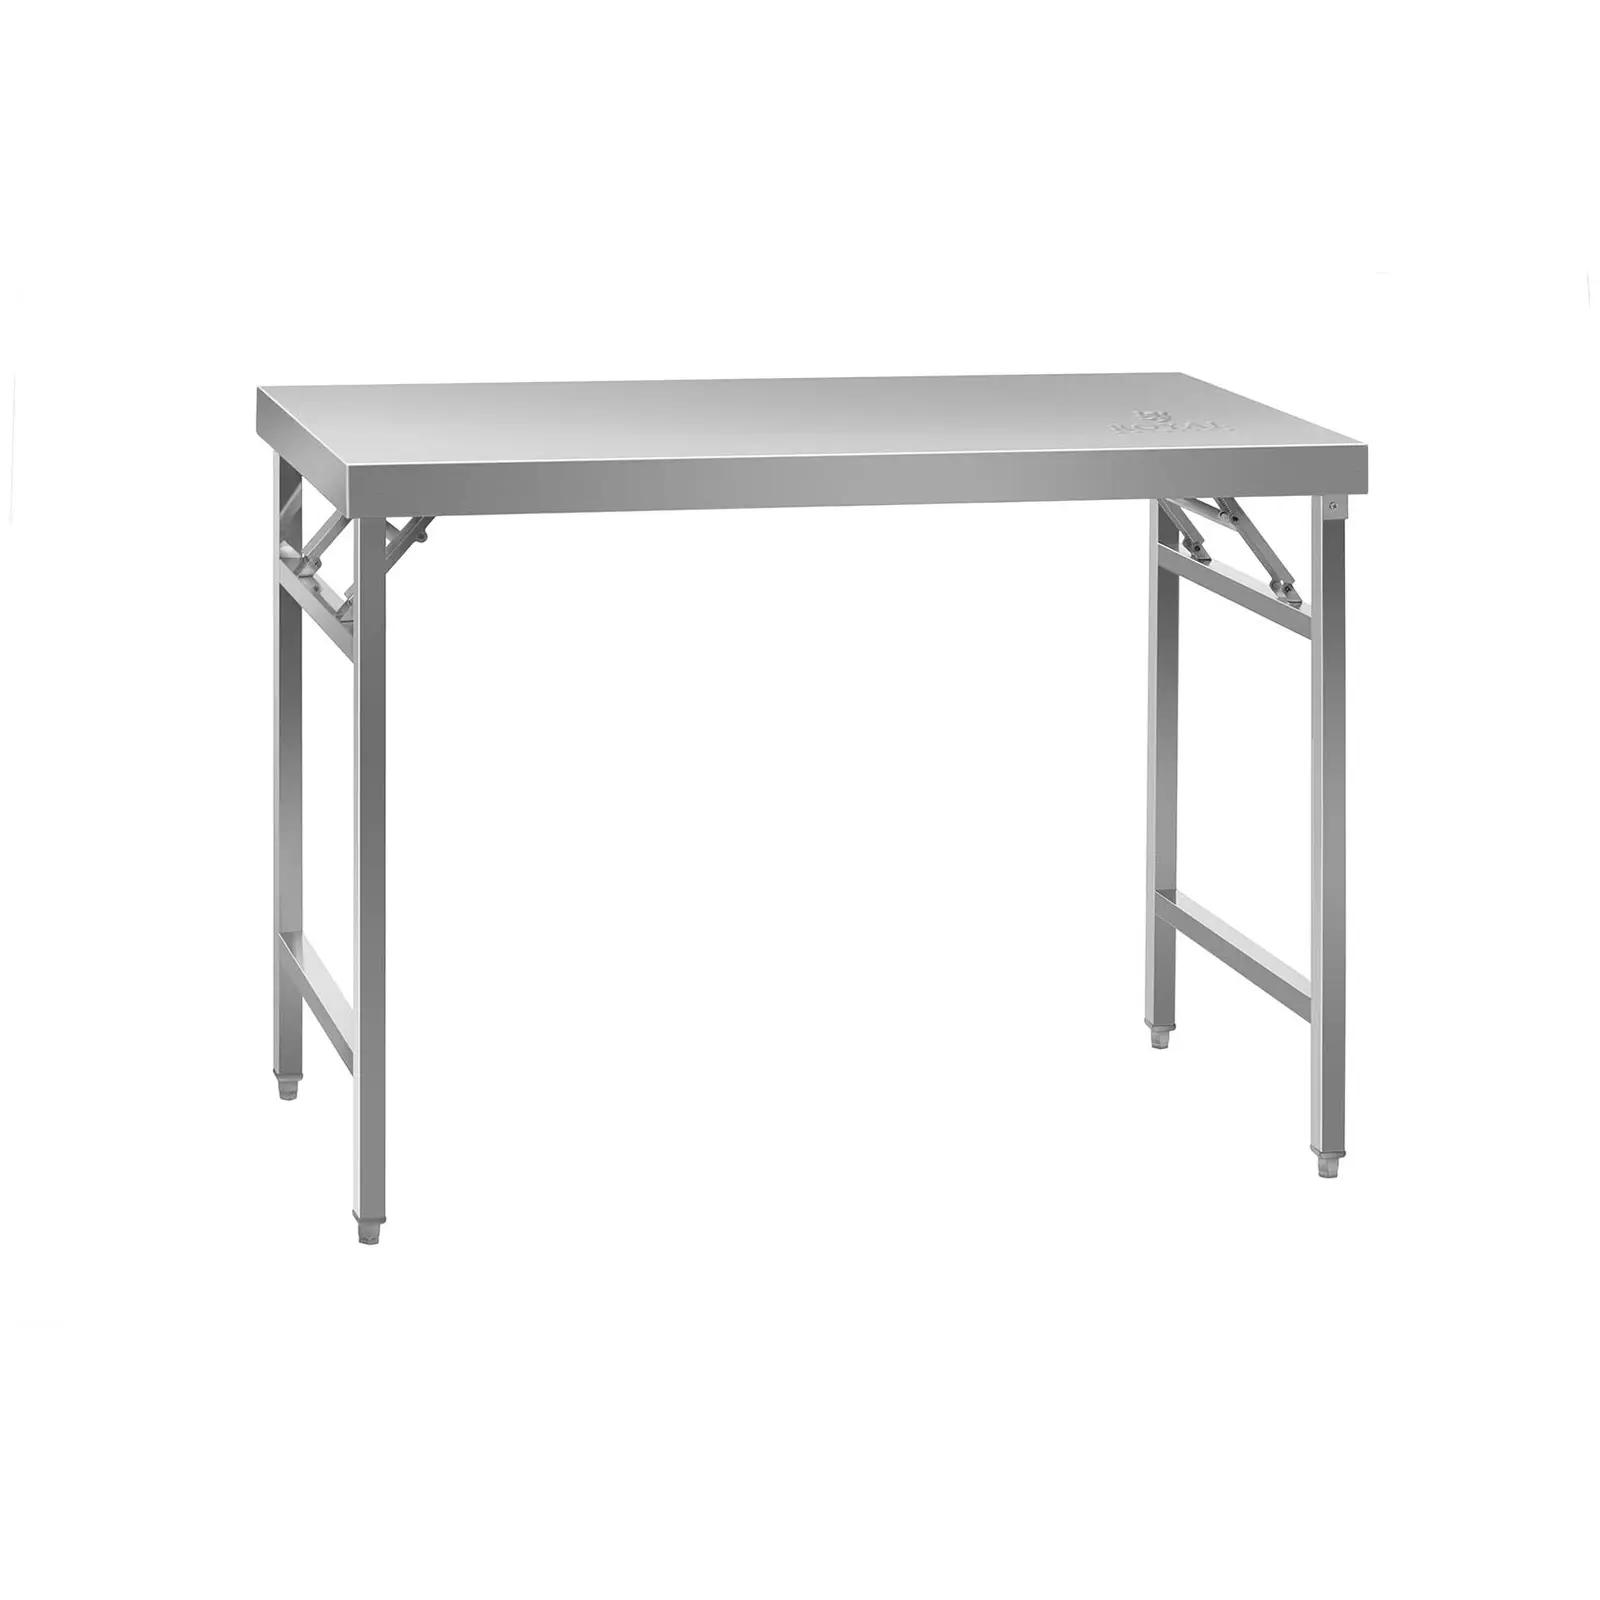 B-zboží Skládací pracovní stůl z ušlechtilé ocele - 120 x 60 cm